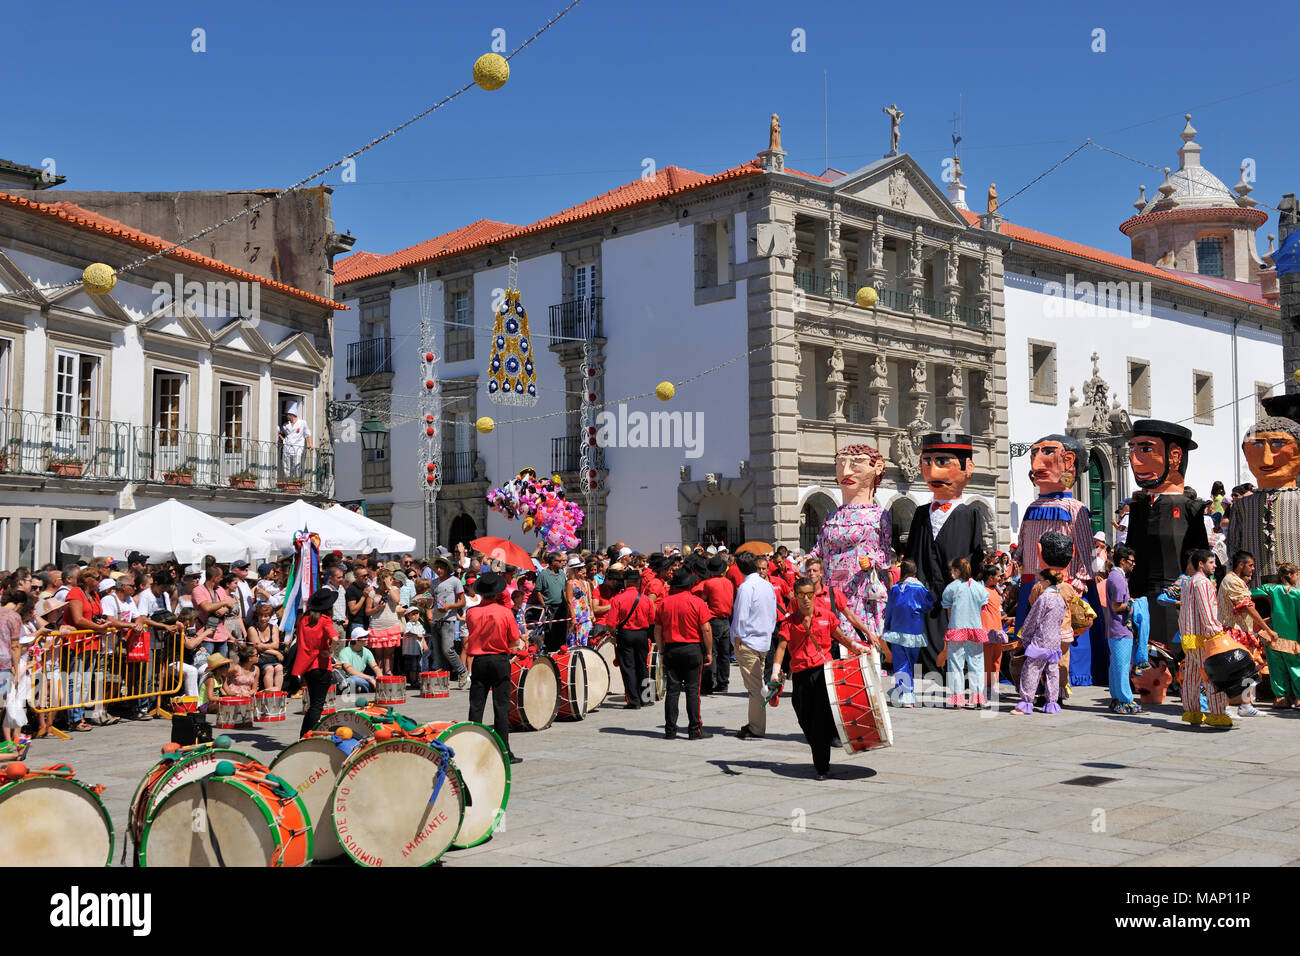 Tradicionales máscaras de cabeza grande de Miño en el centro histórico de Viana do Castelo. Nuestra Señora de la Agonía, festividades, el mayor festival tradicional en Foto de stock